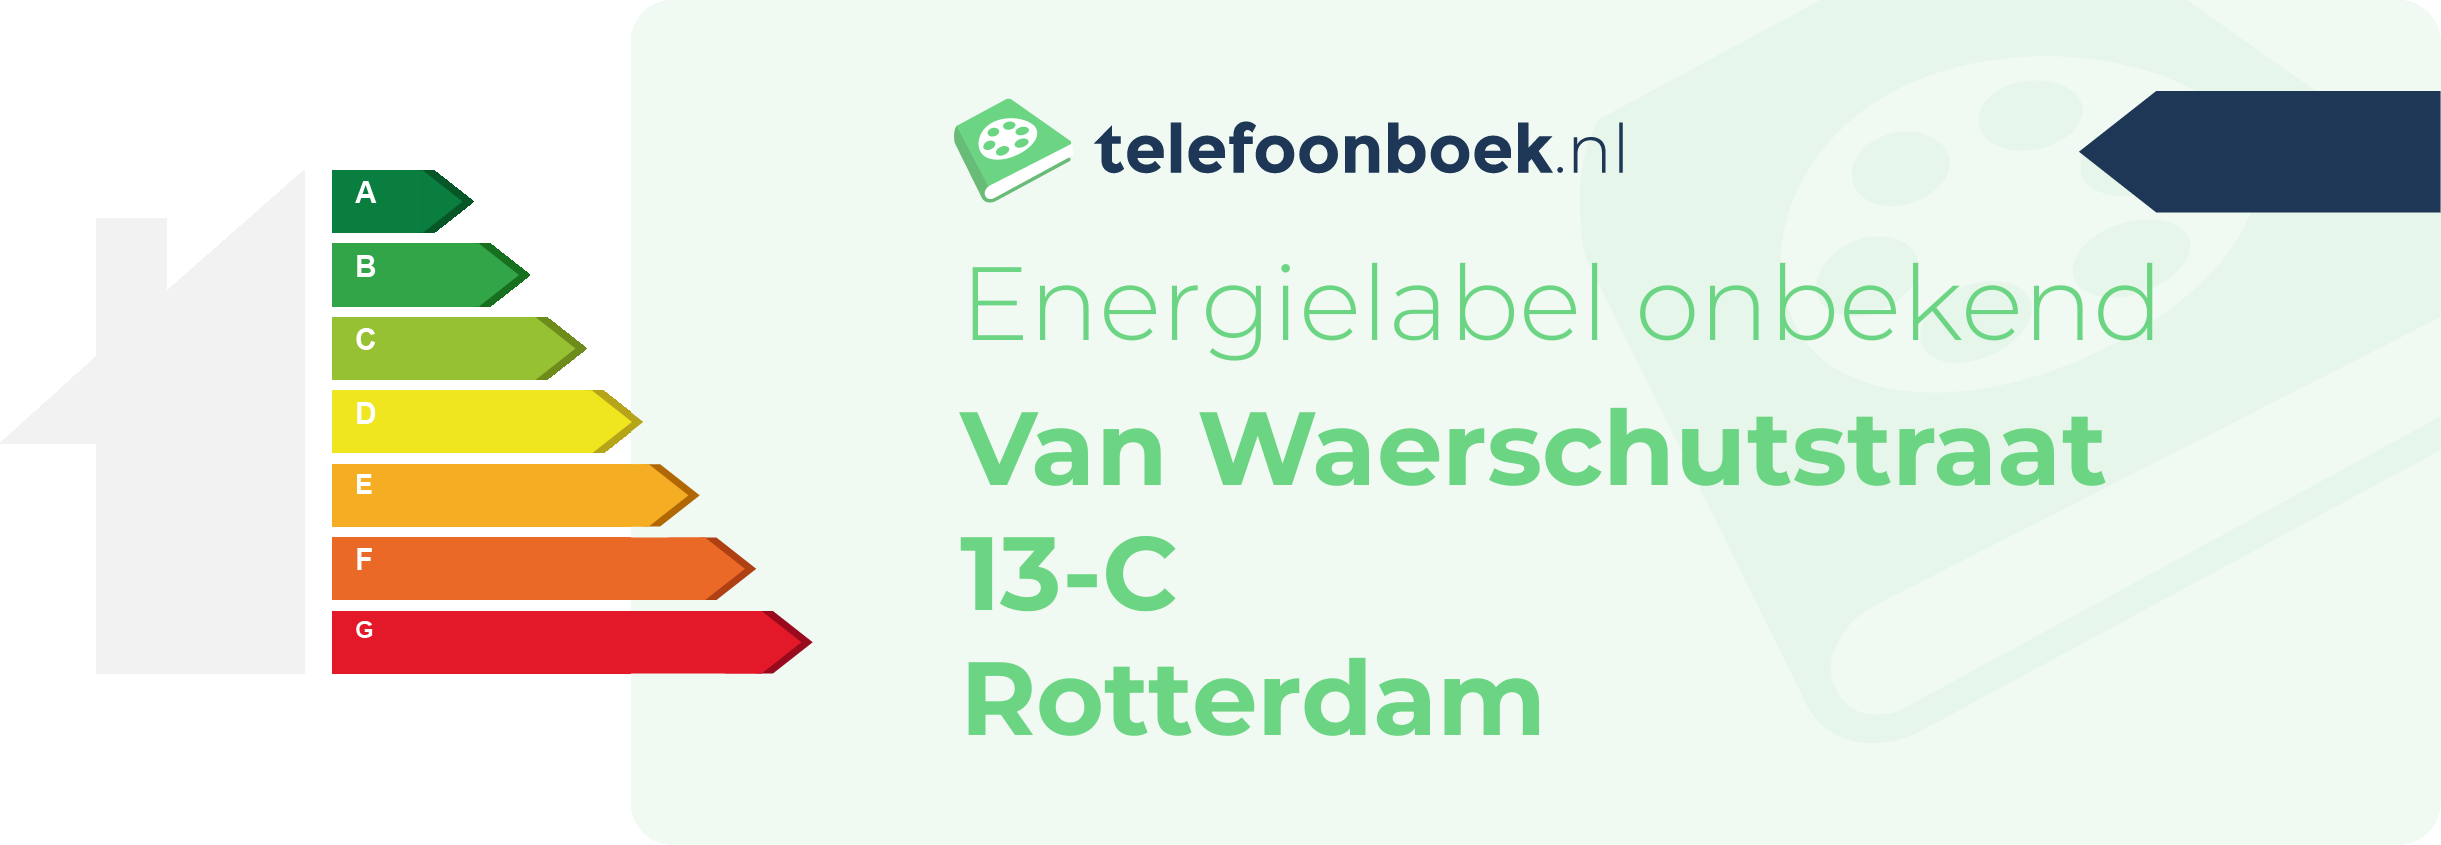 Energielabel Van Waerschutstraat 13-C Rotterdam